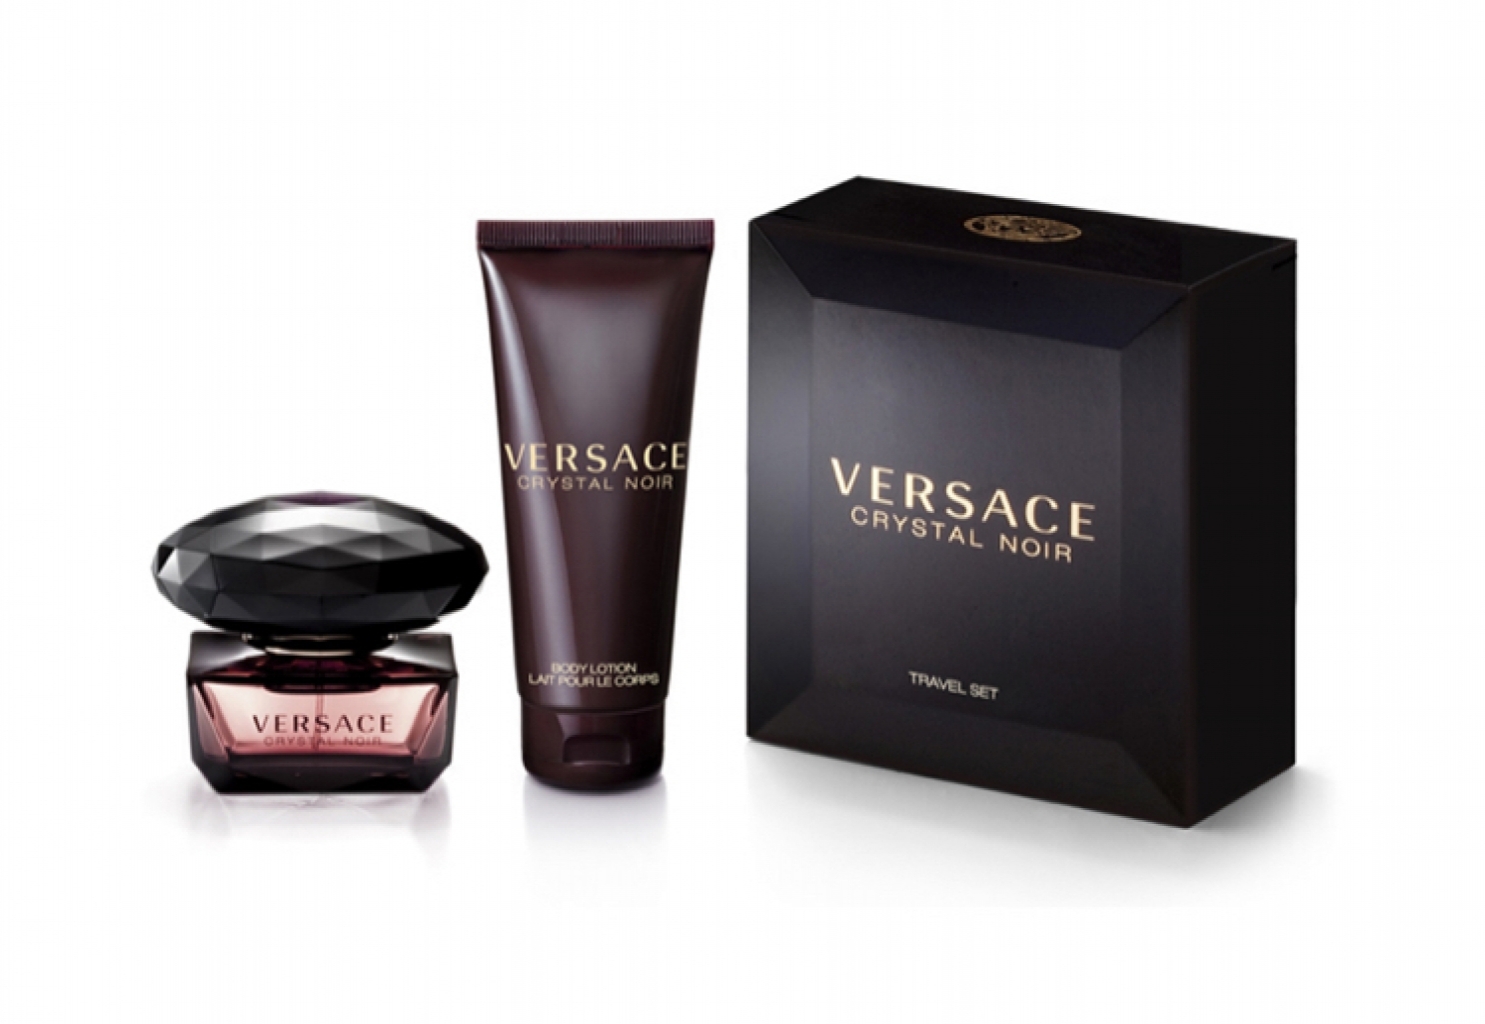 versace black noir perfume price